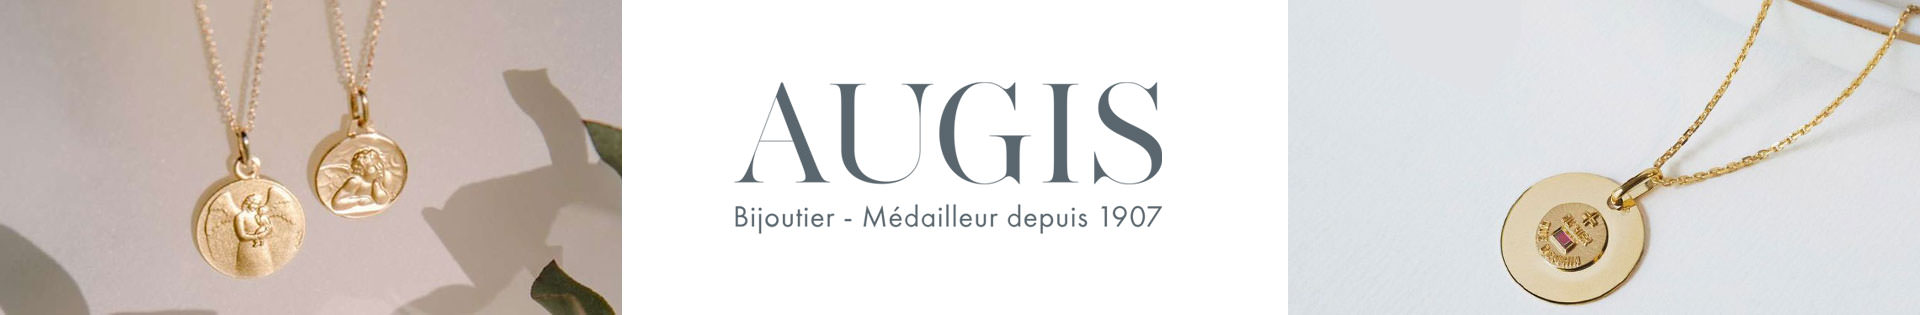 Bague - A.Augis - or 375 millièmes - or 750 millièmes